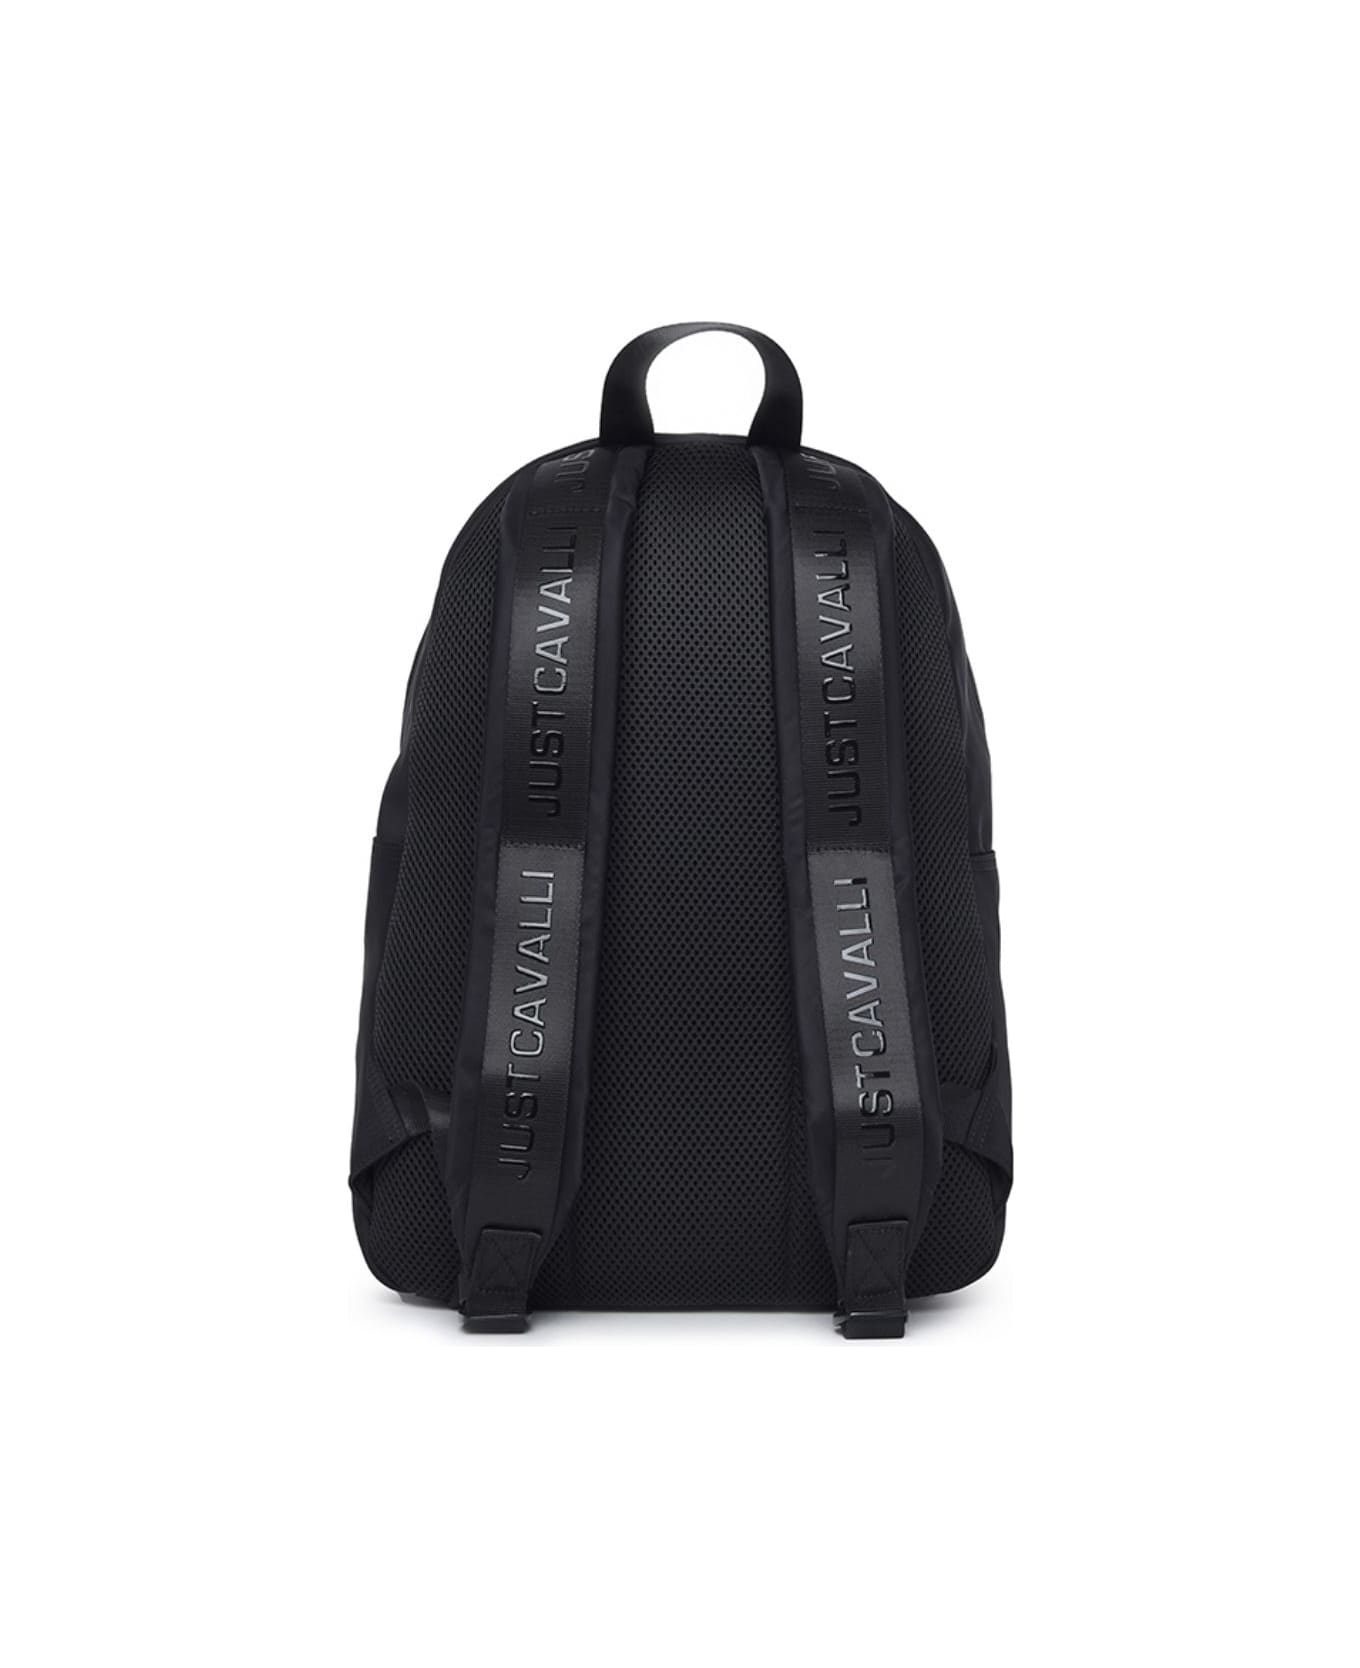 Just Cavalli Backpack - BLACK